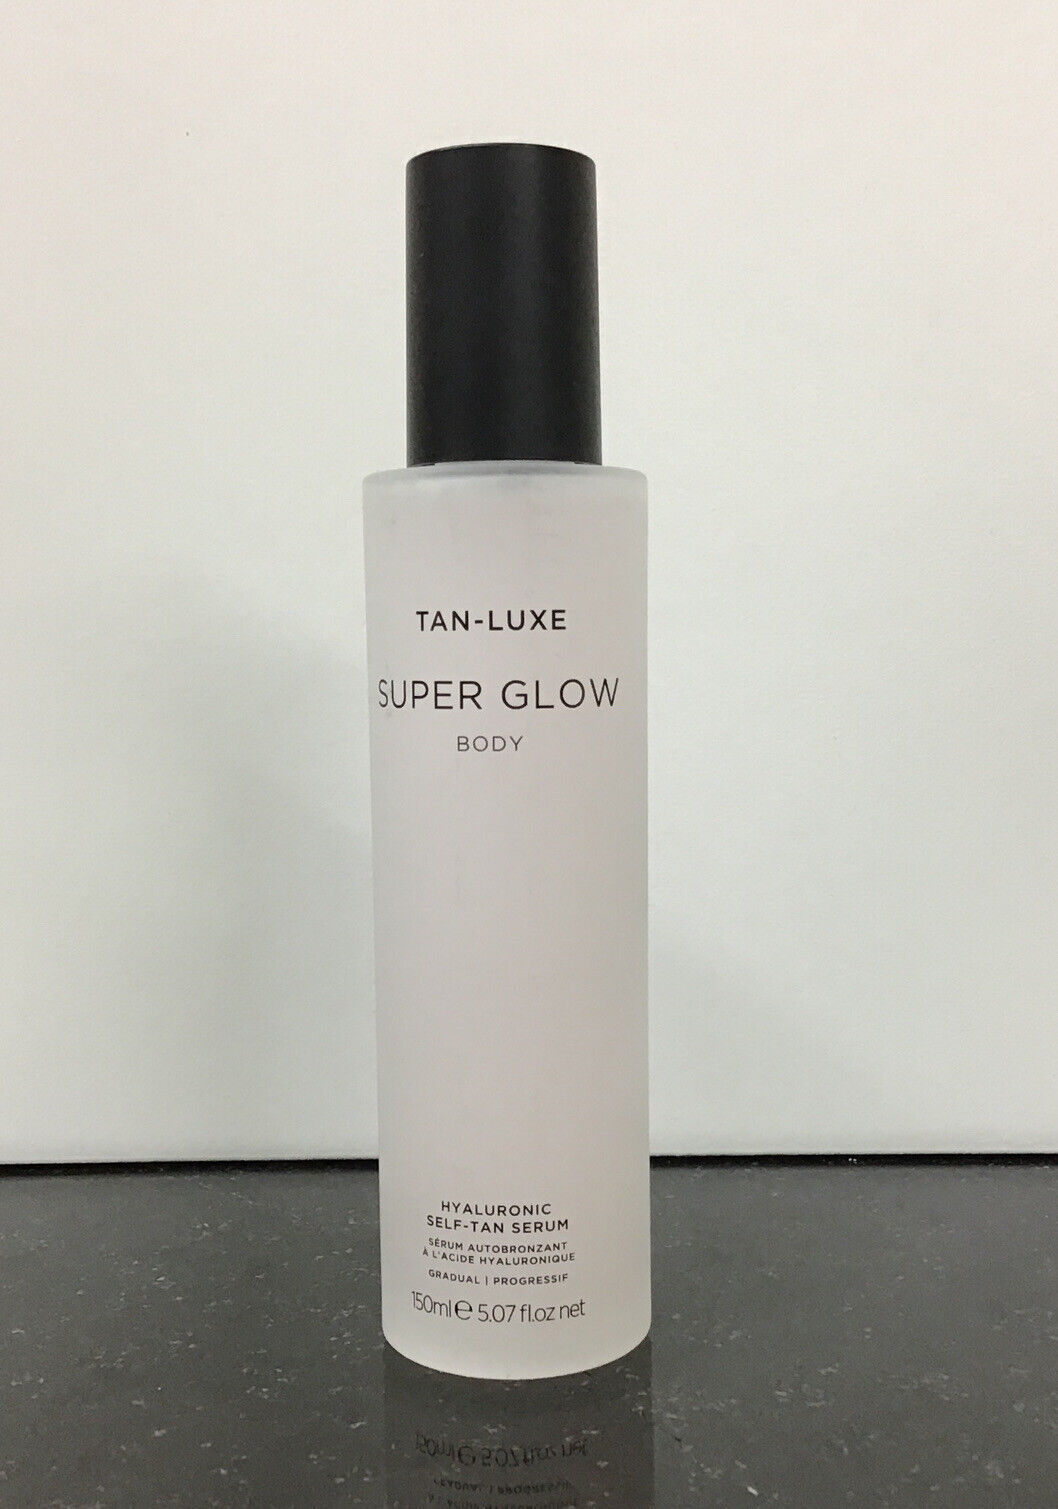 TAN LUXE Super Glow body Hyaluronic self-tan serum 5.07 oz/150 ml.